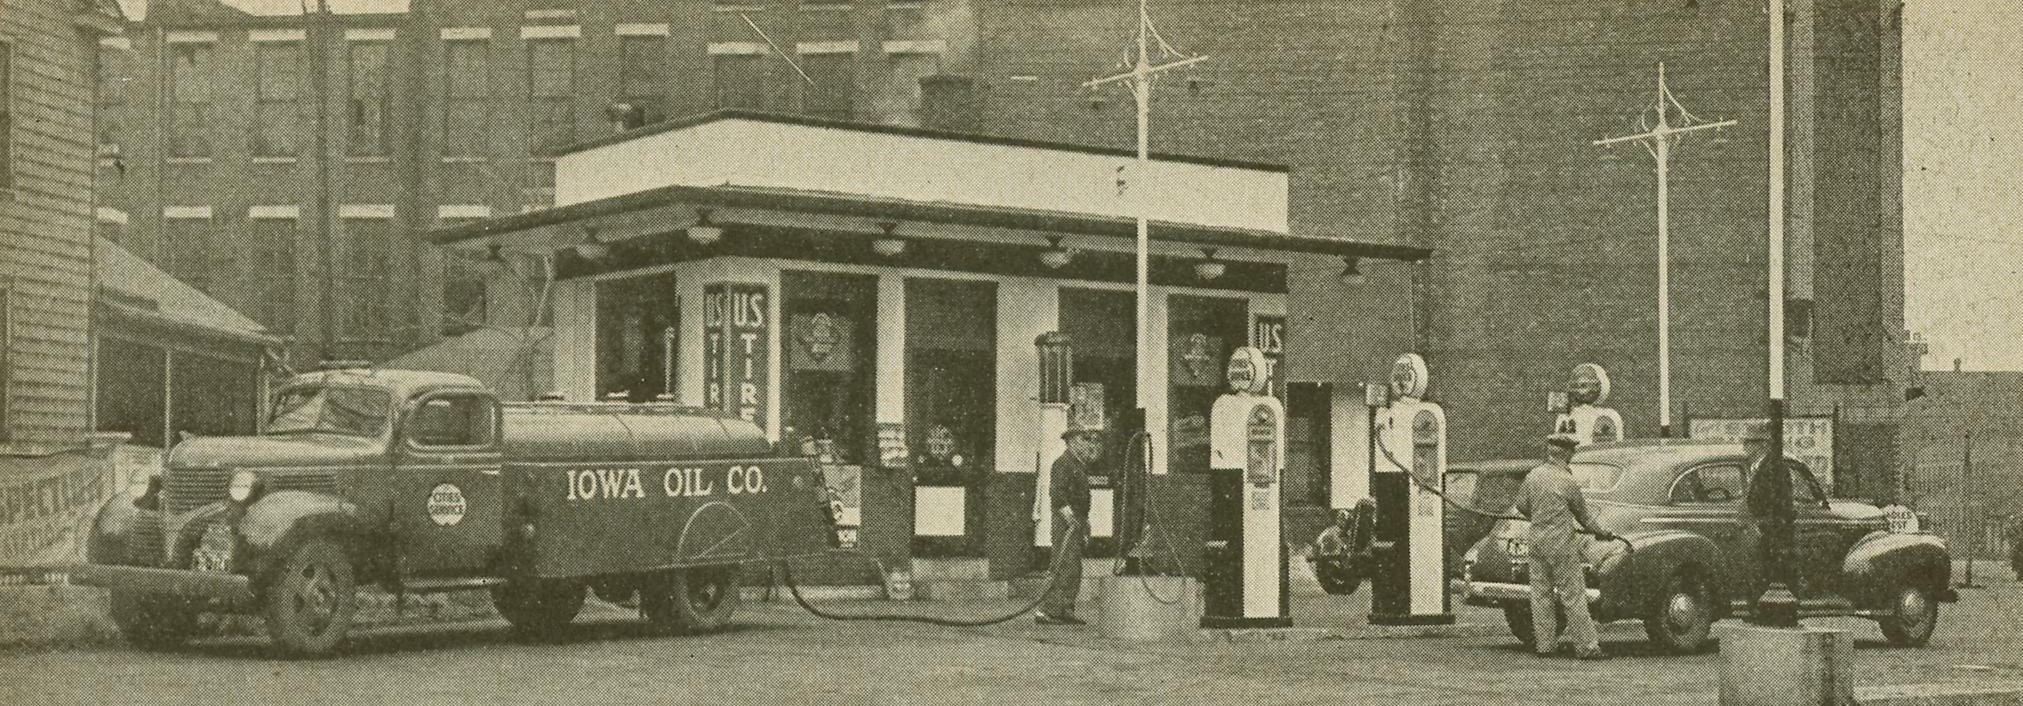 Iowa Oil Company Station, Dubuque, Iowa